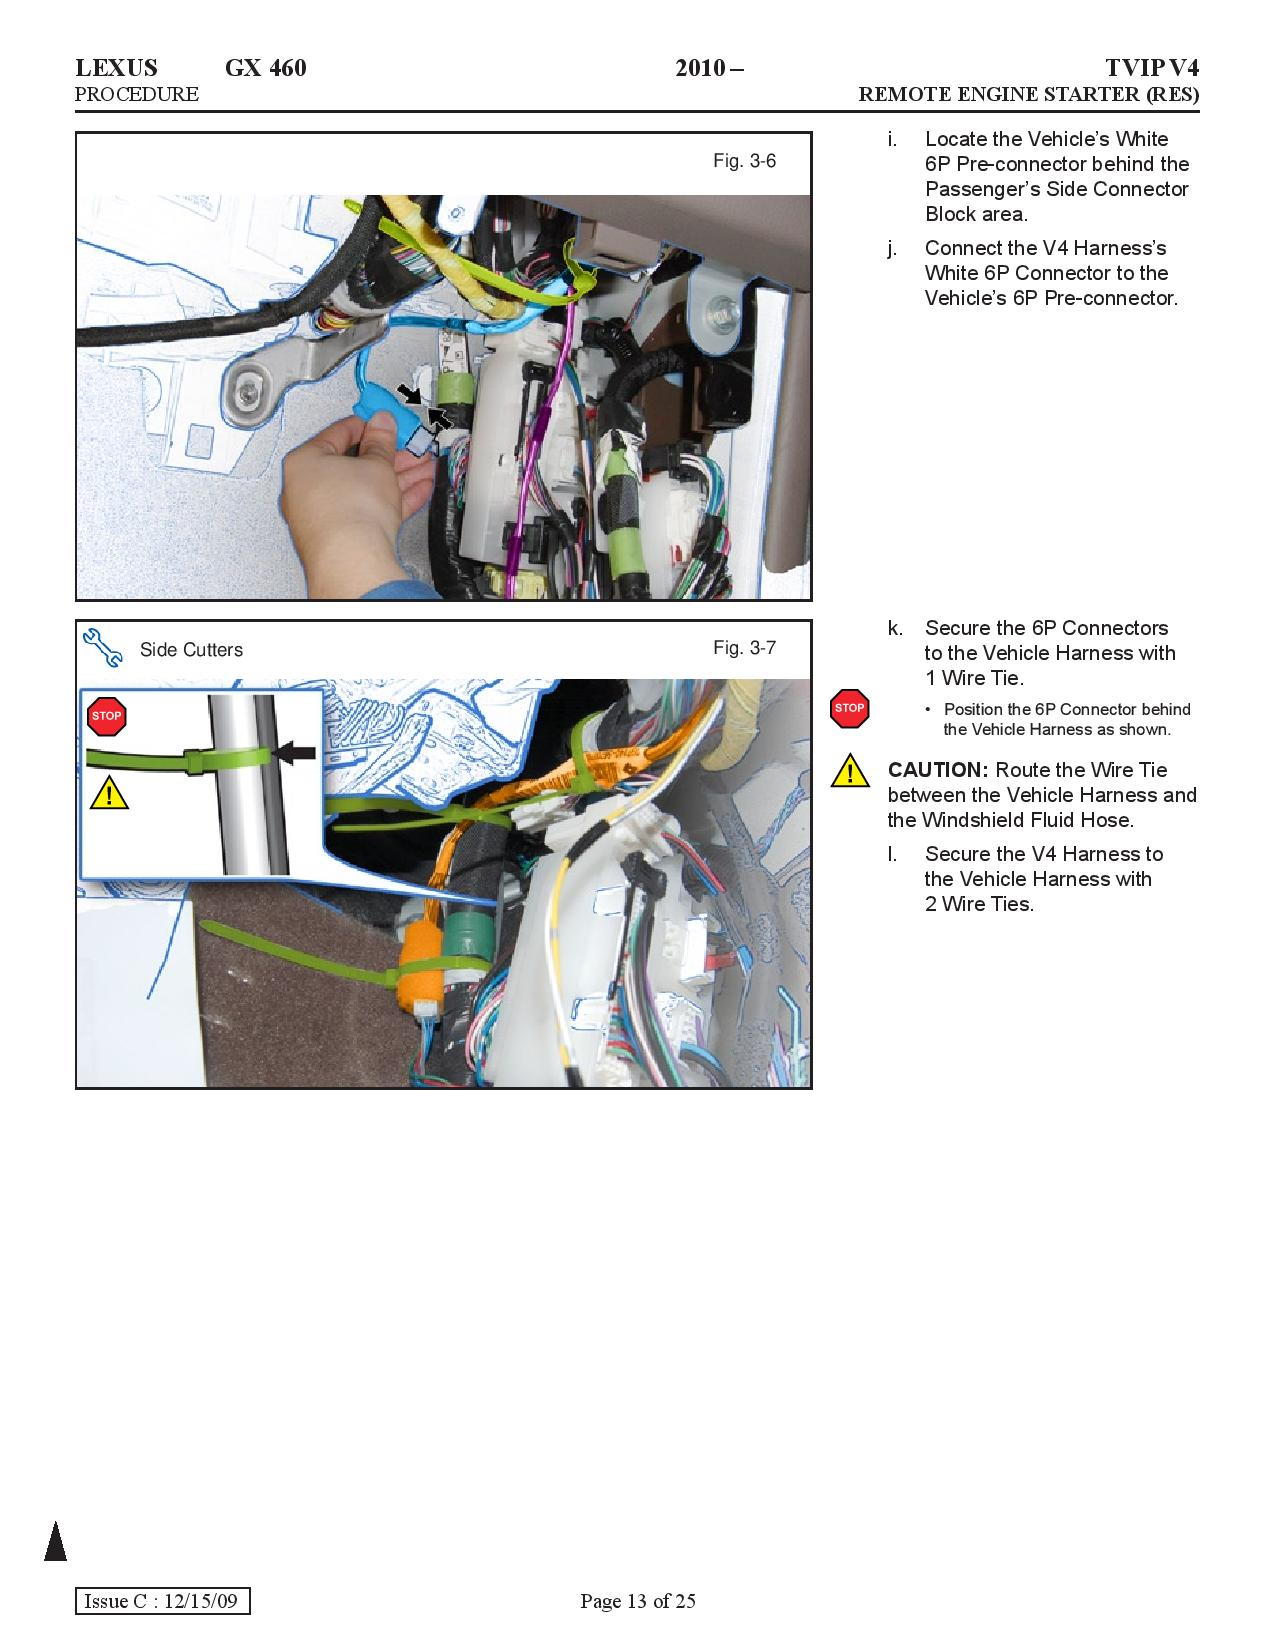 GX460 Remote Engine Start (RES & RES+) - Page 17 - ClubLexus - Lexus